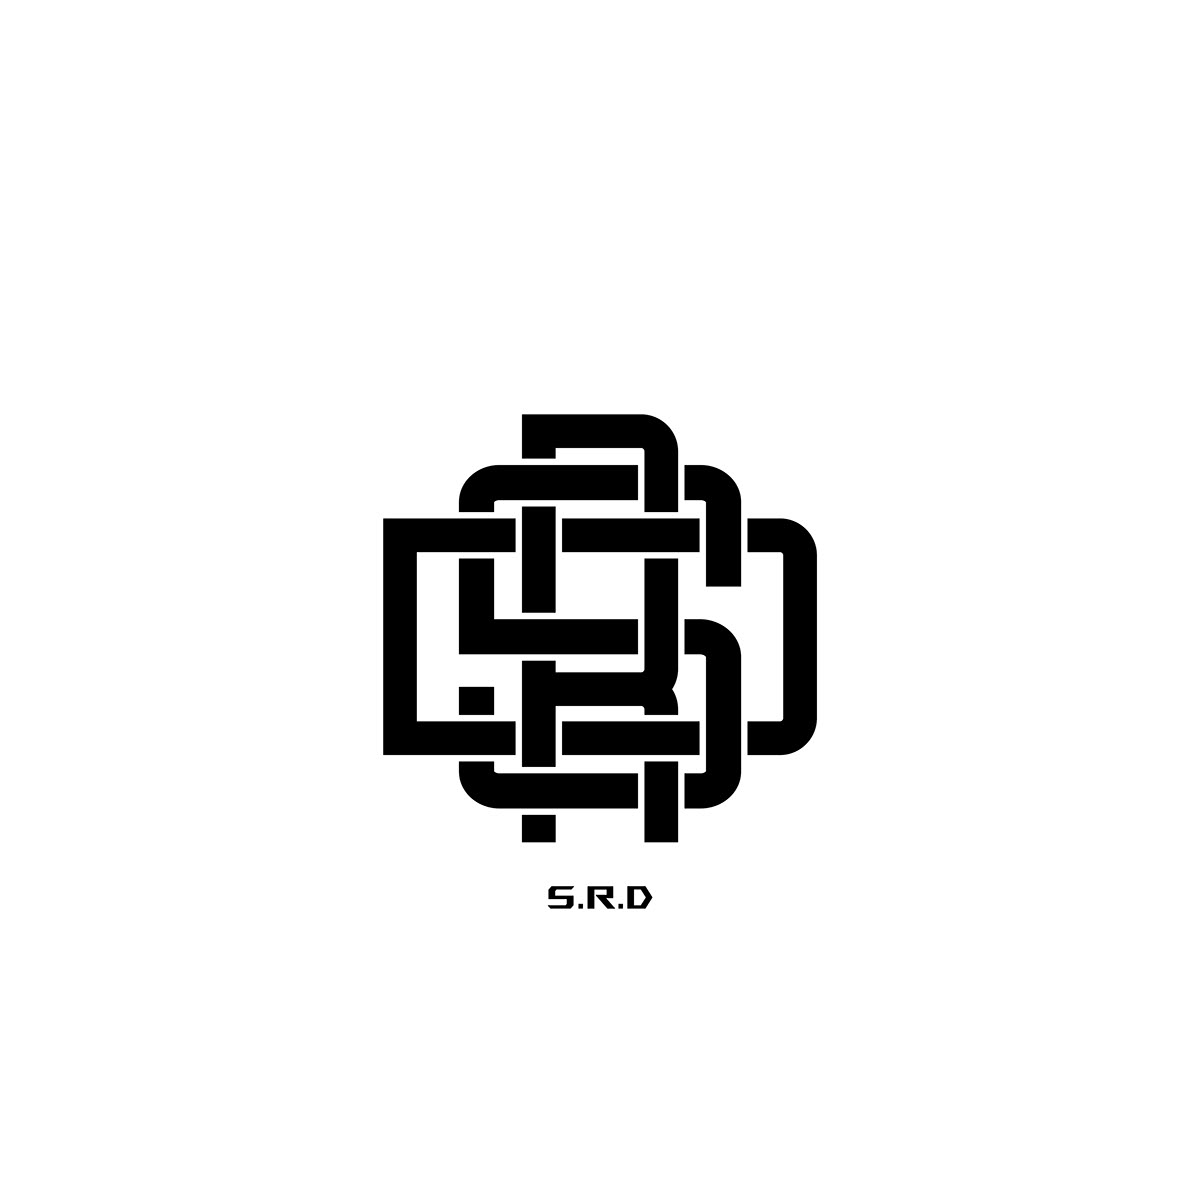 S.R.D Monogram Logo